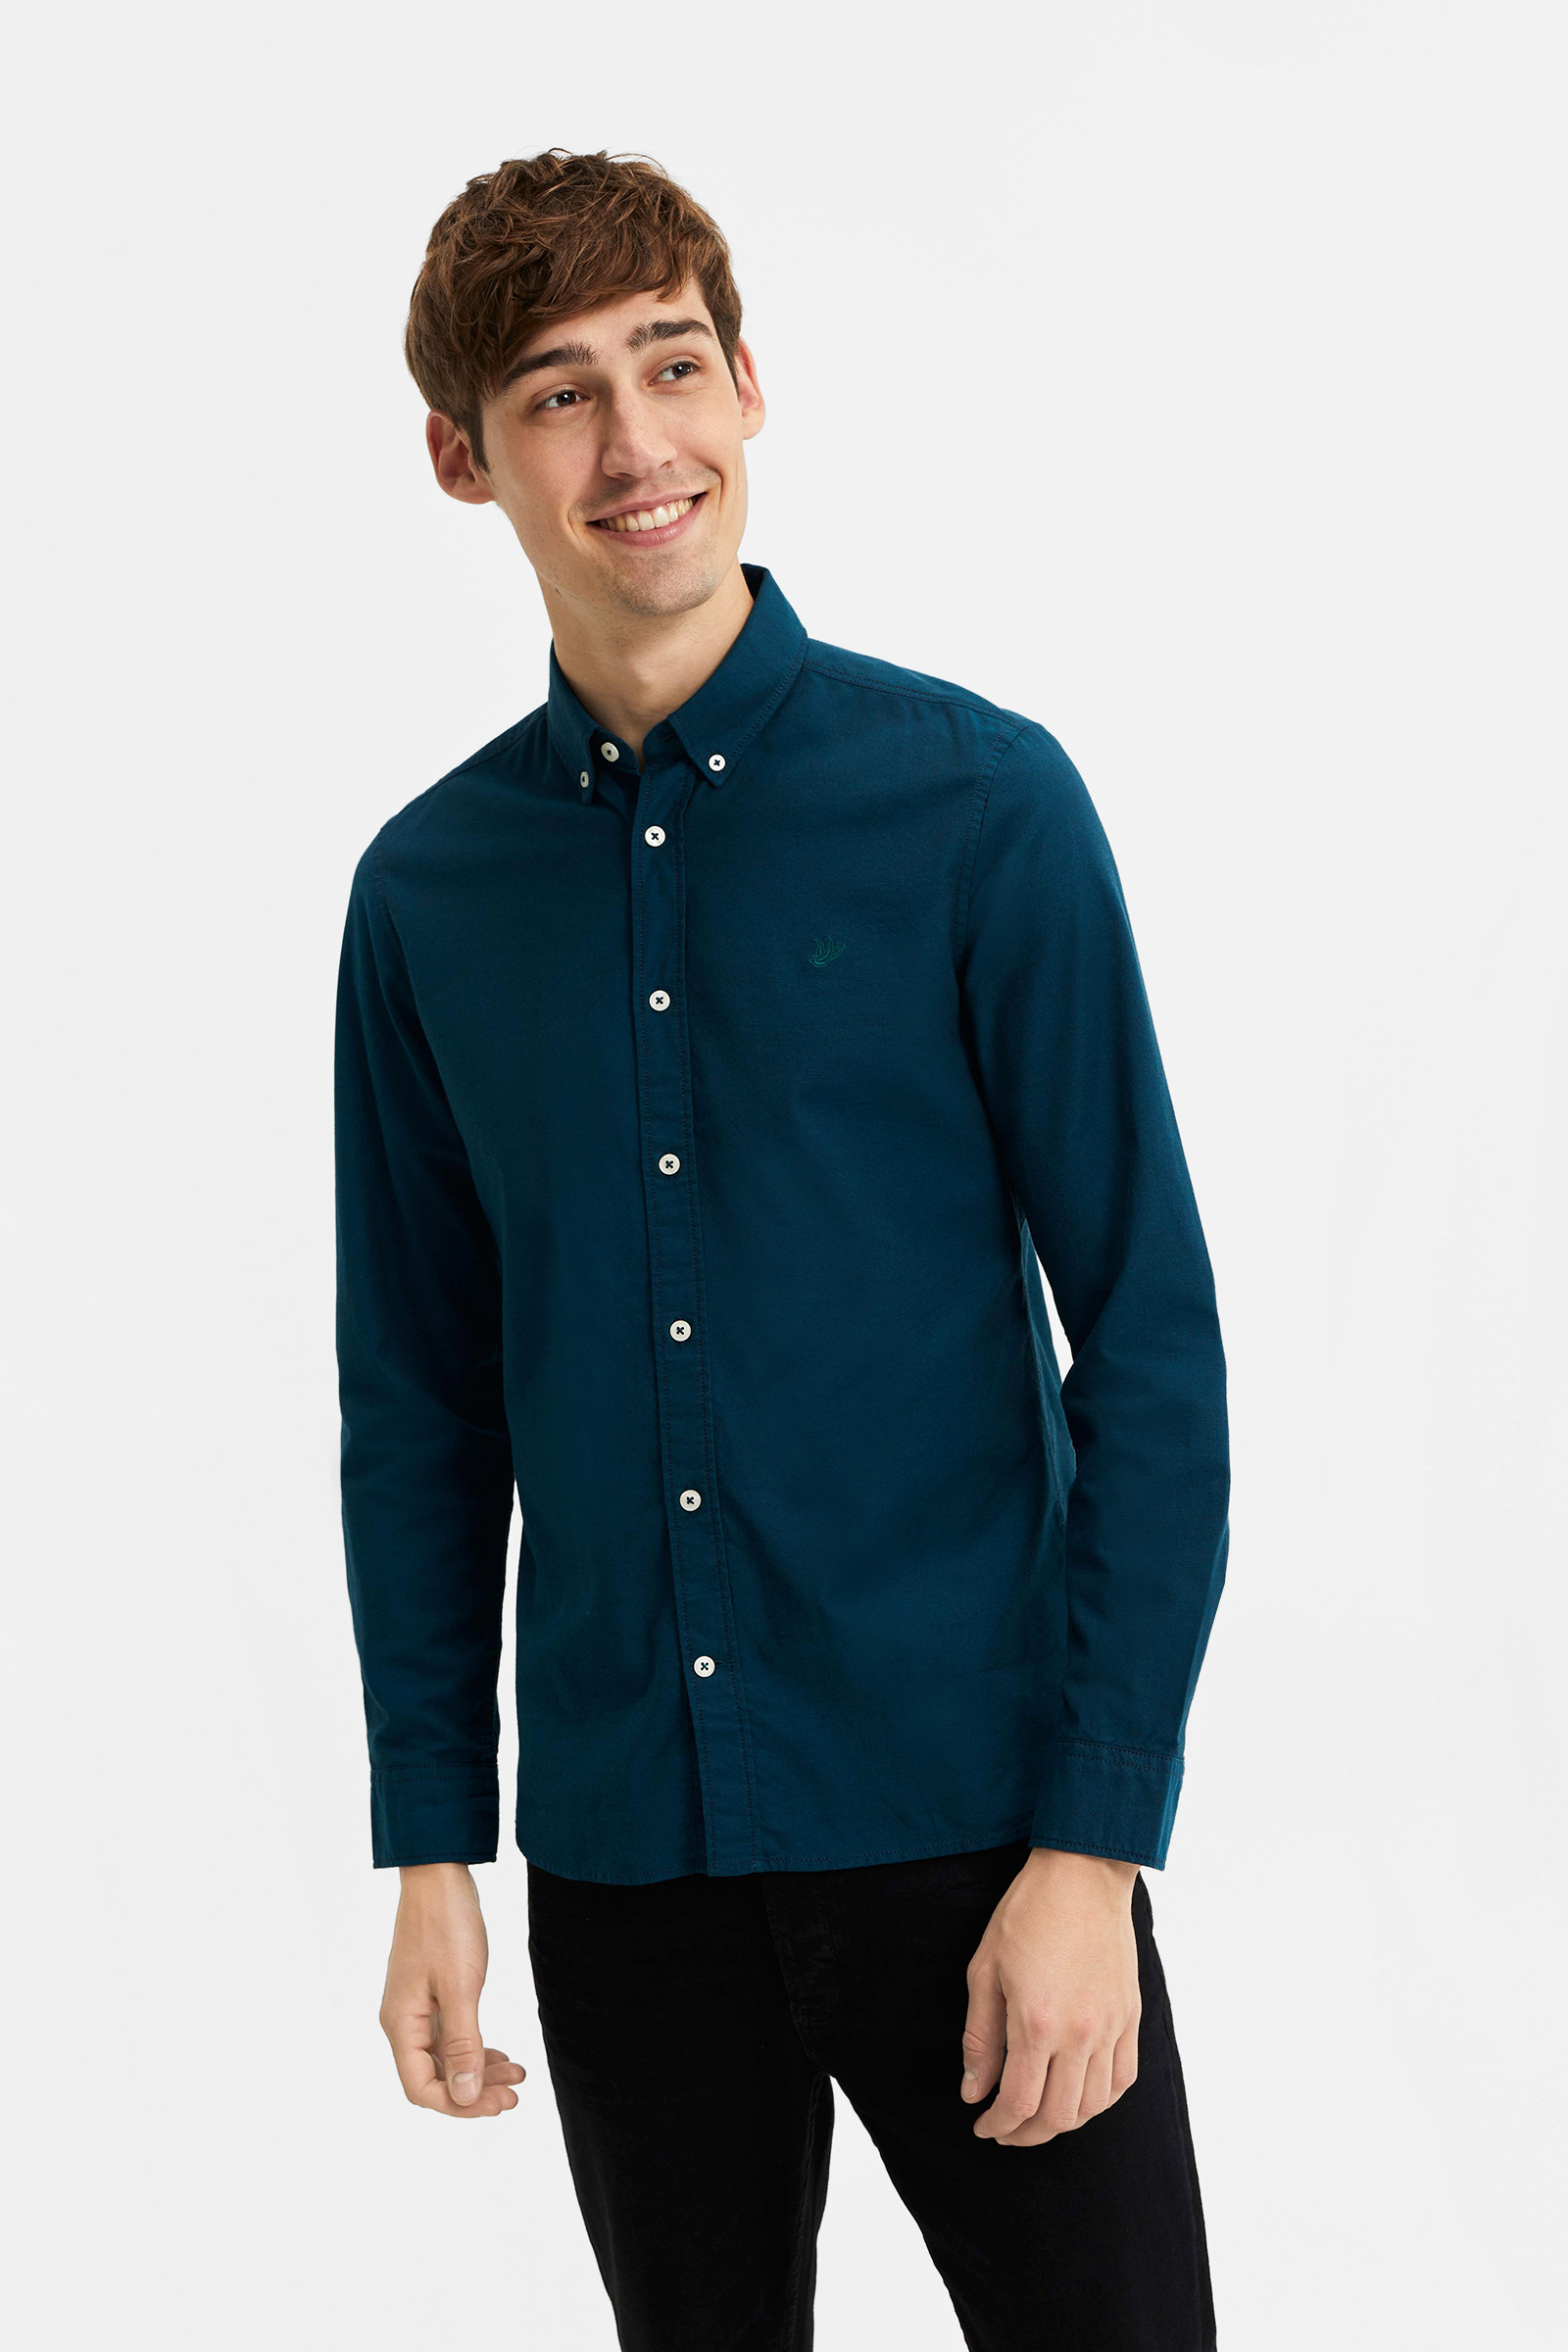 Kleding Herenkleding Overhemden & T-shirts Oxfords & Buttondowns Overhemd heren Versace 